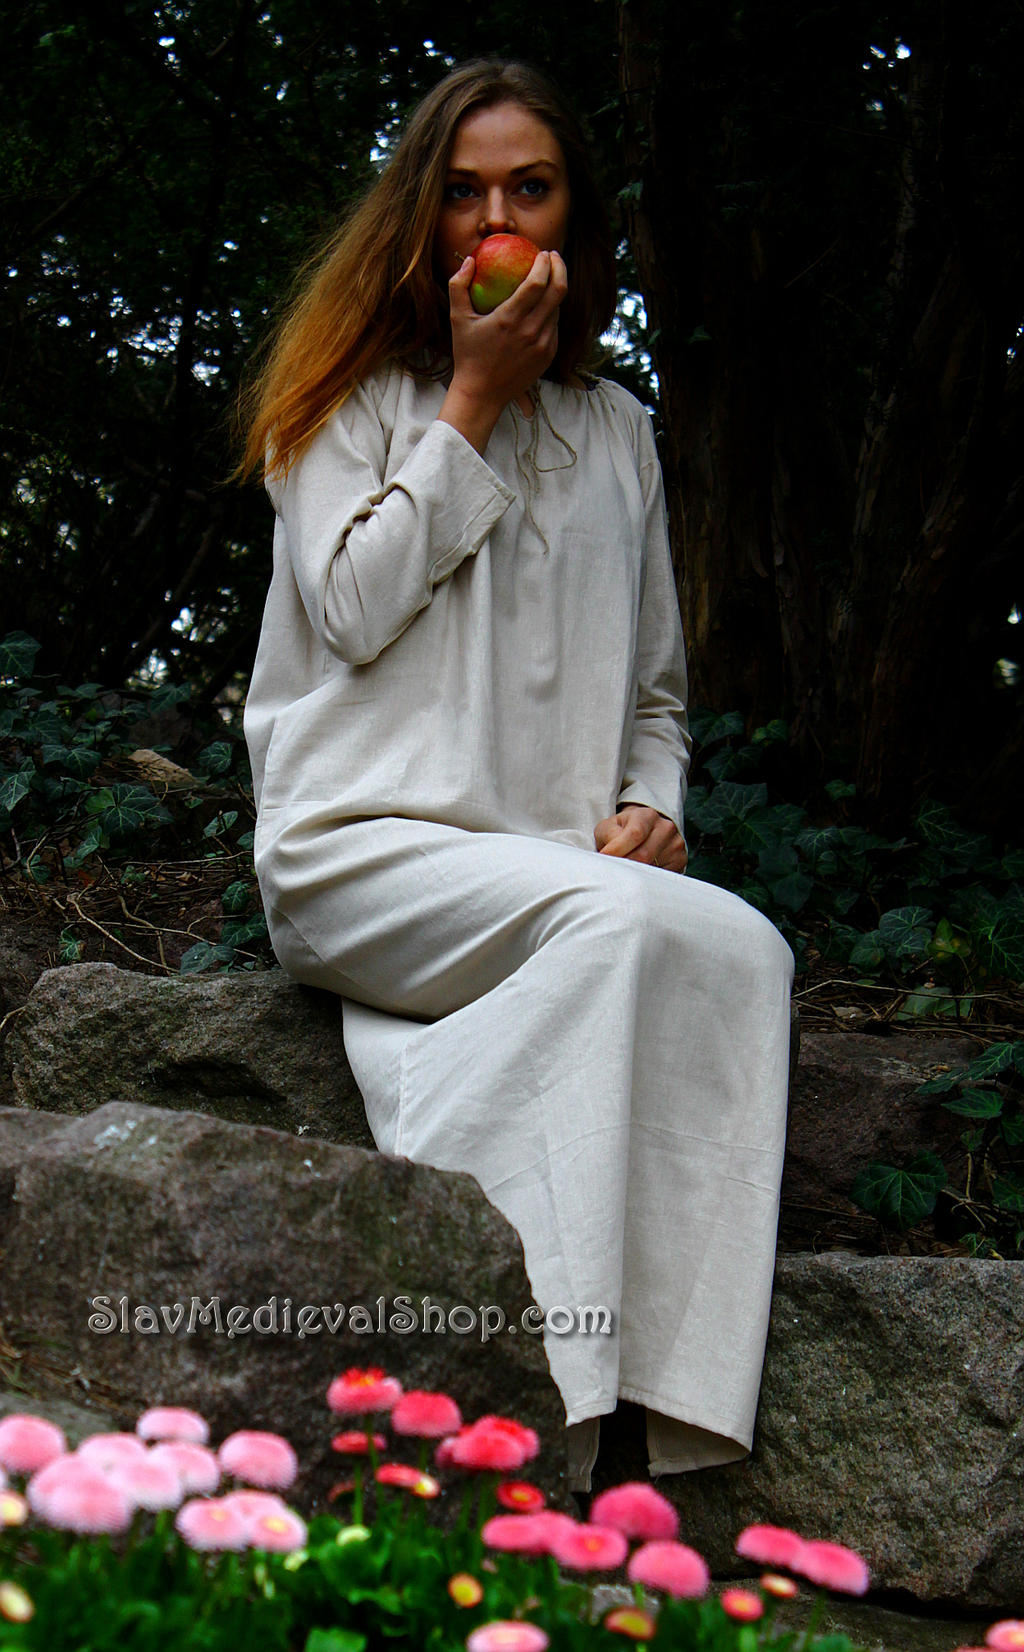 Linen chemise - medieval underdress by SlavMedievalShop on DeviantArt